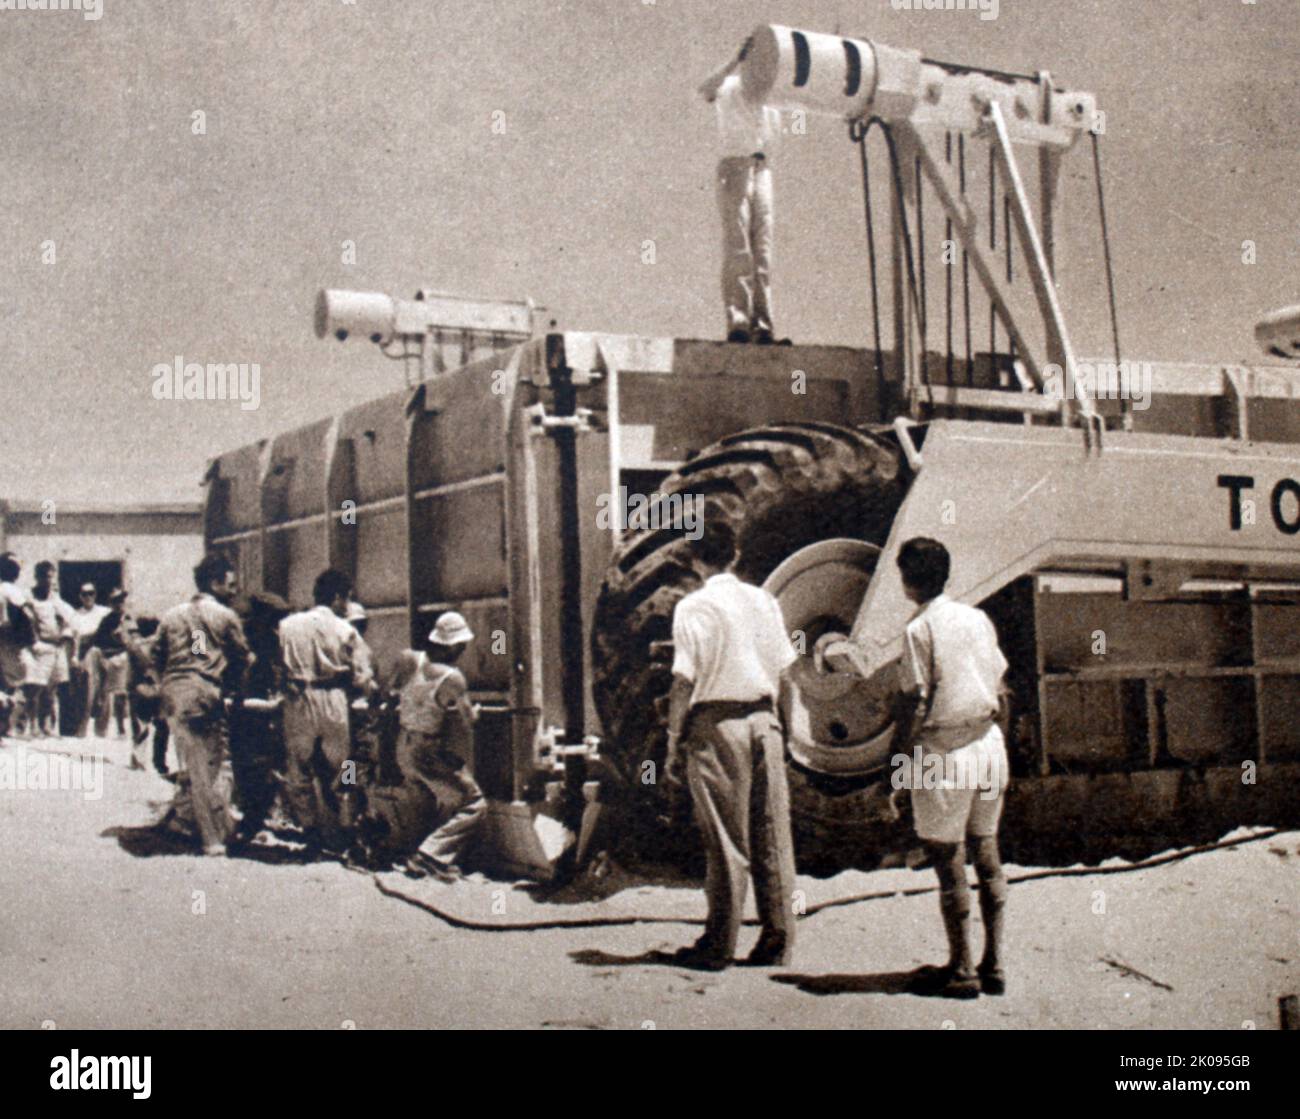 Casa che si posa in Israele. Il Tournlayer in azione in Palestina. Il dispositivo consente di gettare le case in cemento sul sito. La guerra arabo-israeliana del 1948 (o prima) fu la seconda e ultima fase della guerra palestinese del 1947-1949. Foto Stock